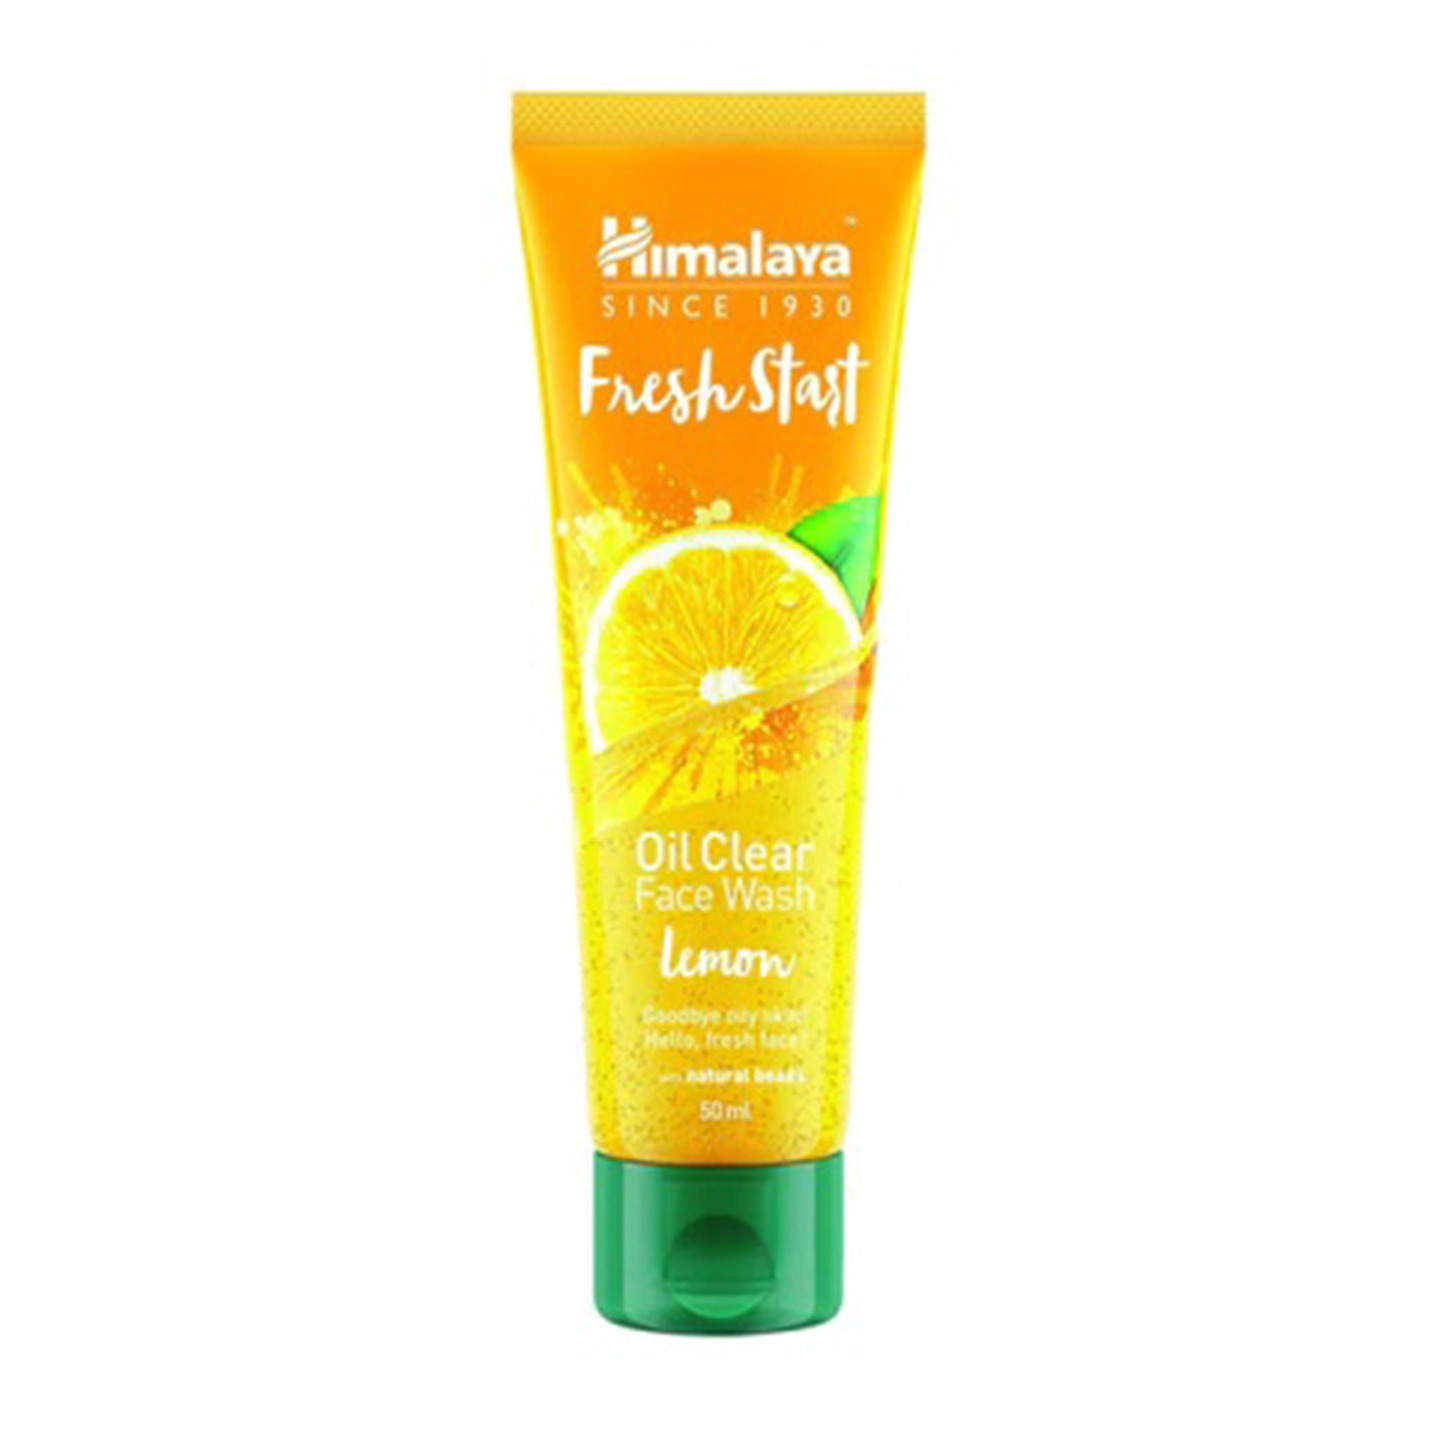 Fresh Start Oil Clear Face Wash Lemon 50ml